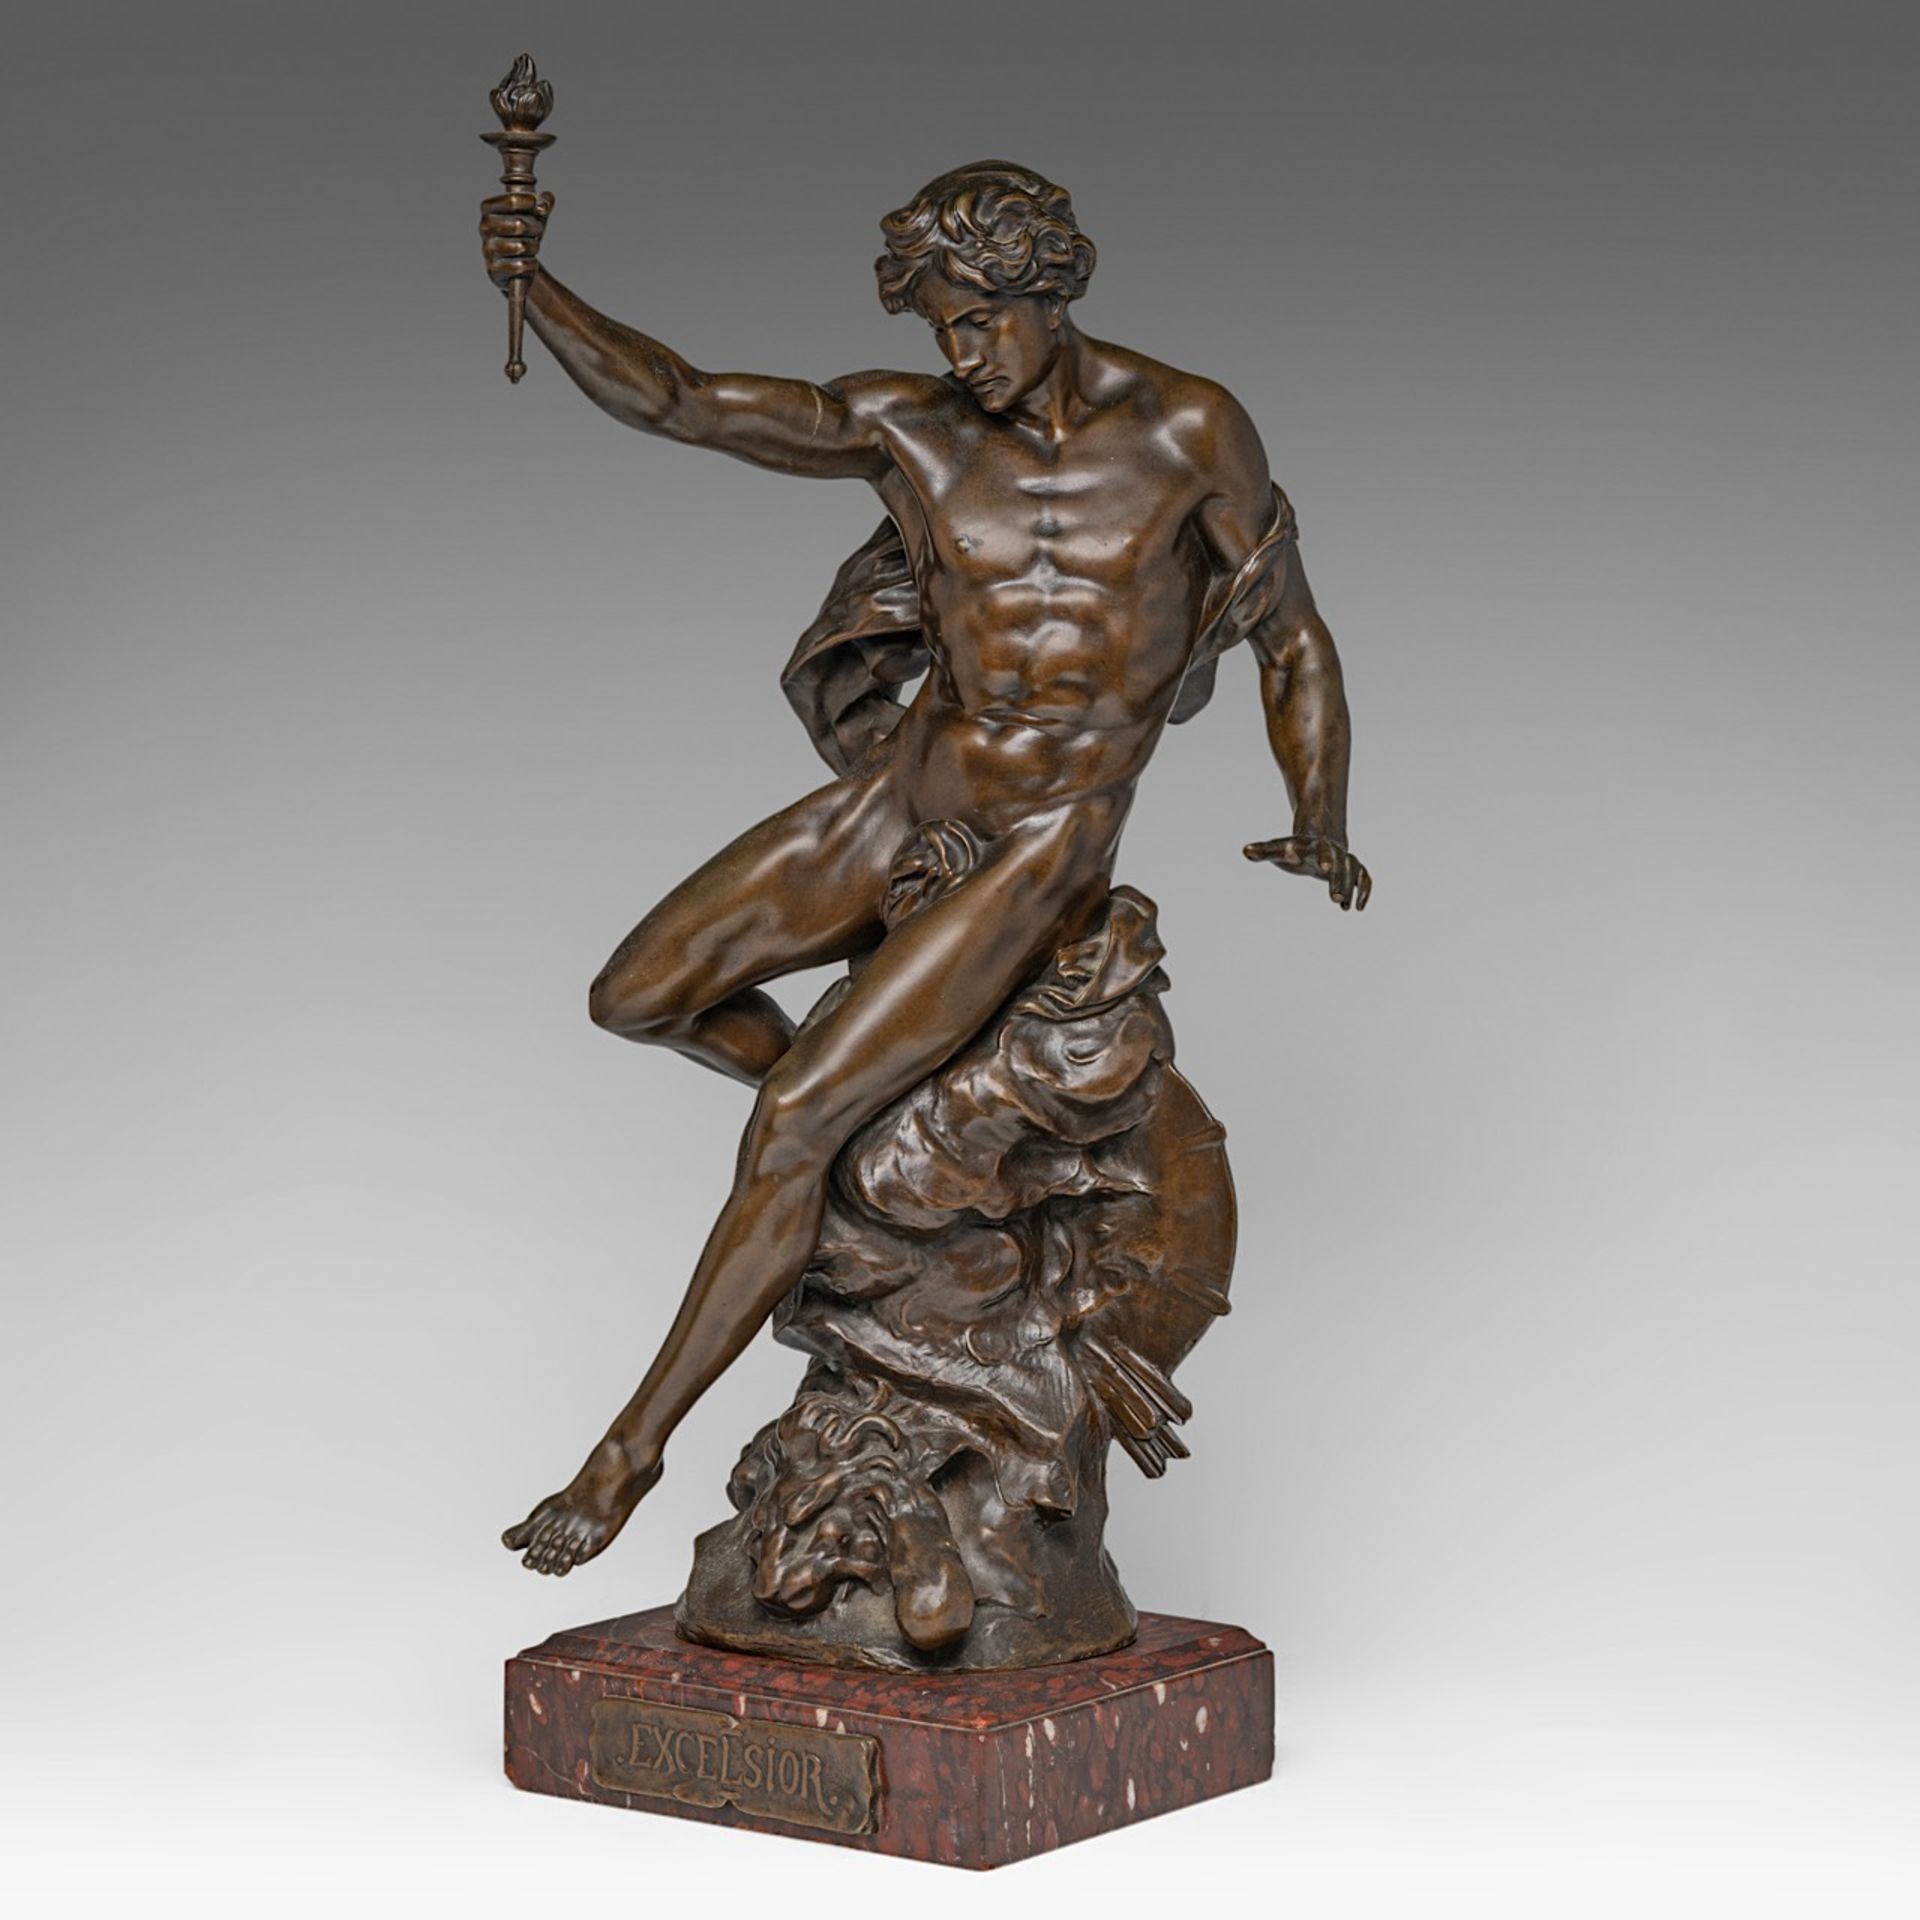 Emile Louis Picault (1833-1915), 'Excelsior', patinated bronze, H 61 cm - Bild 2 aus 8